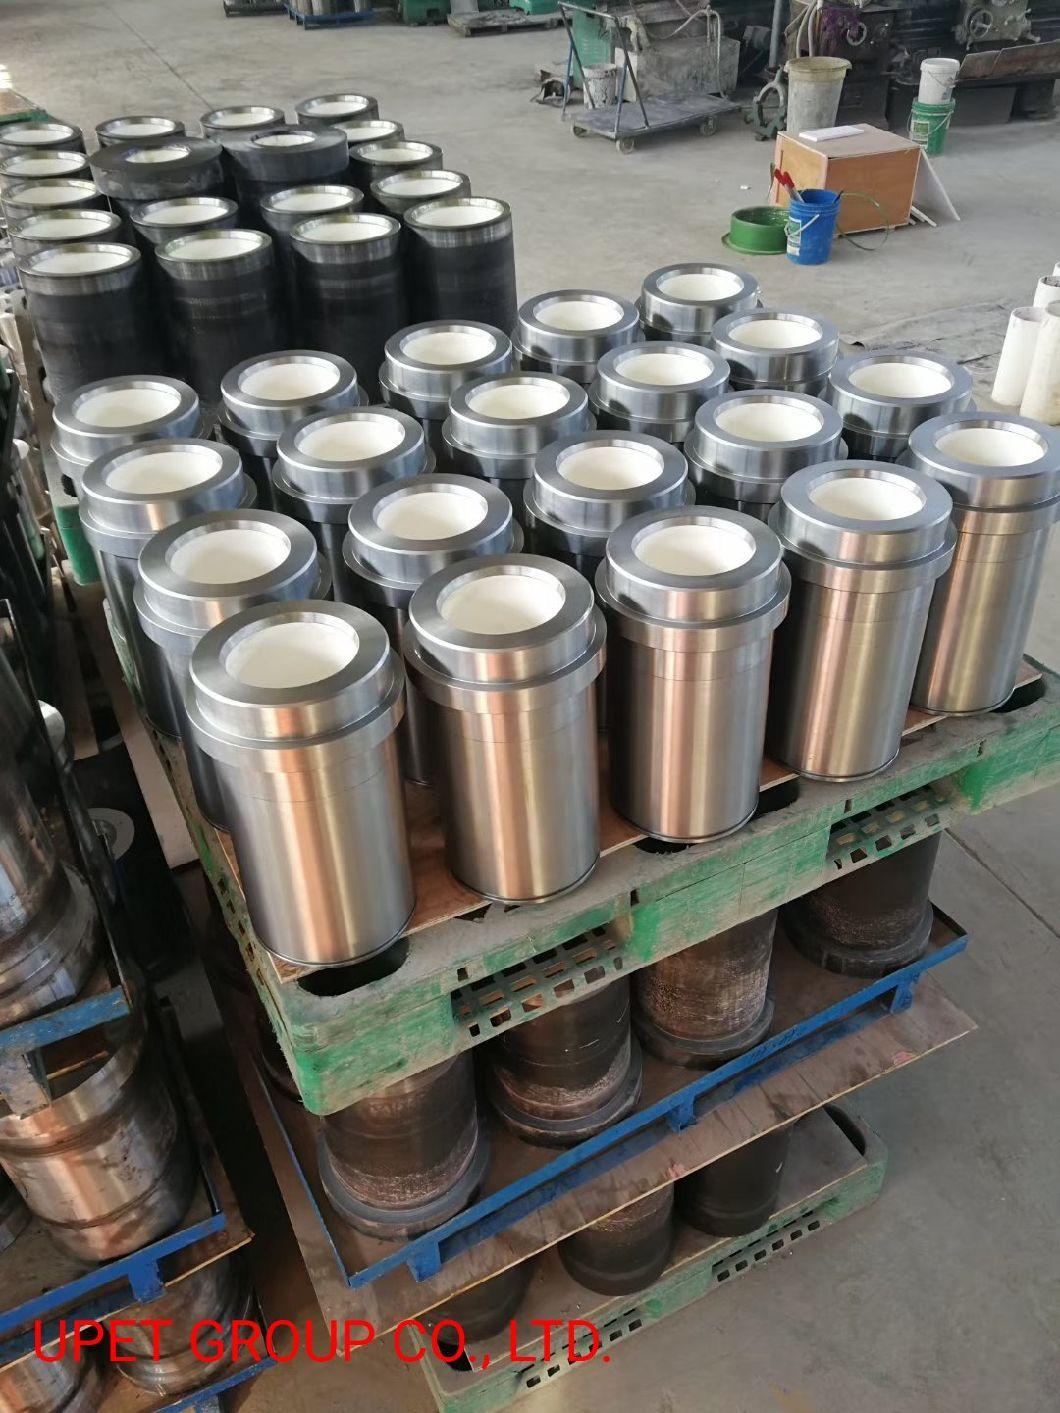 Oil Drilling Mud Pump Parts Ceramic Liner F-1000, F-1600, 14p-220, 12p-160, T-1300, Pz-8, Pz-9etc